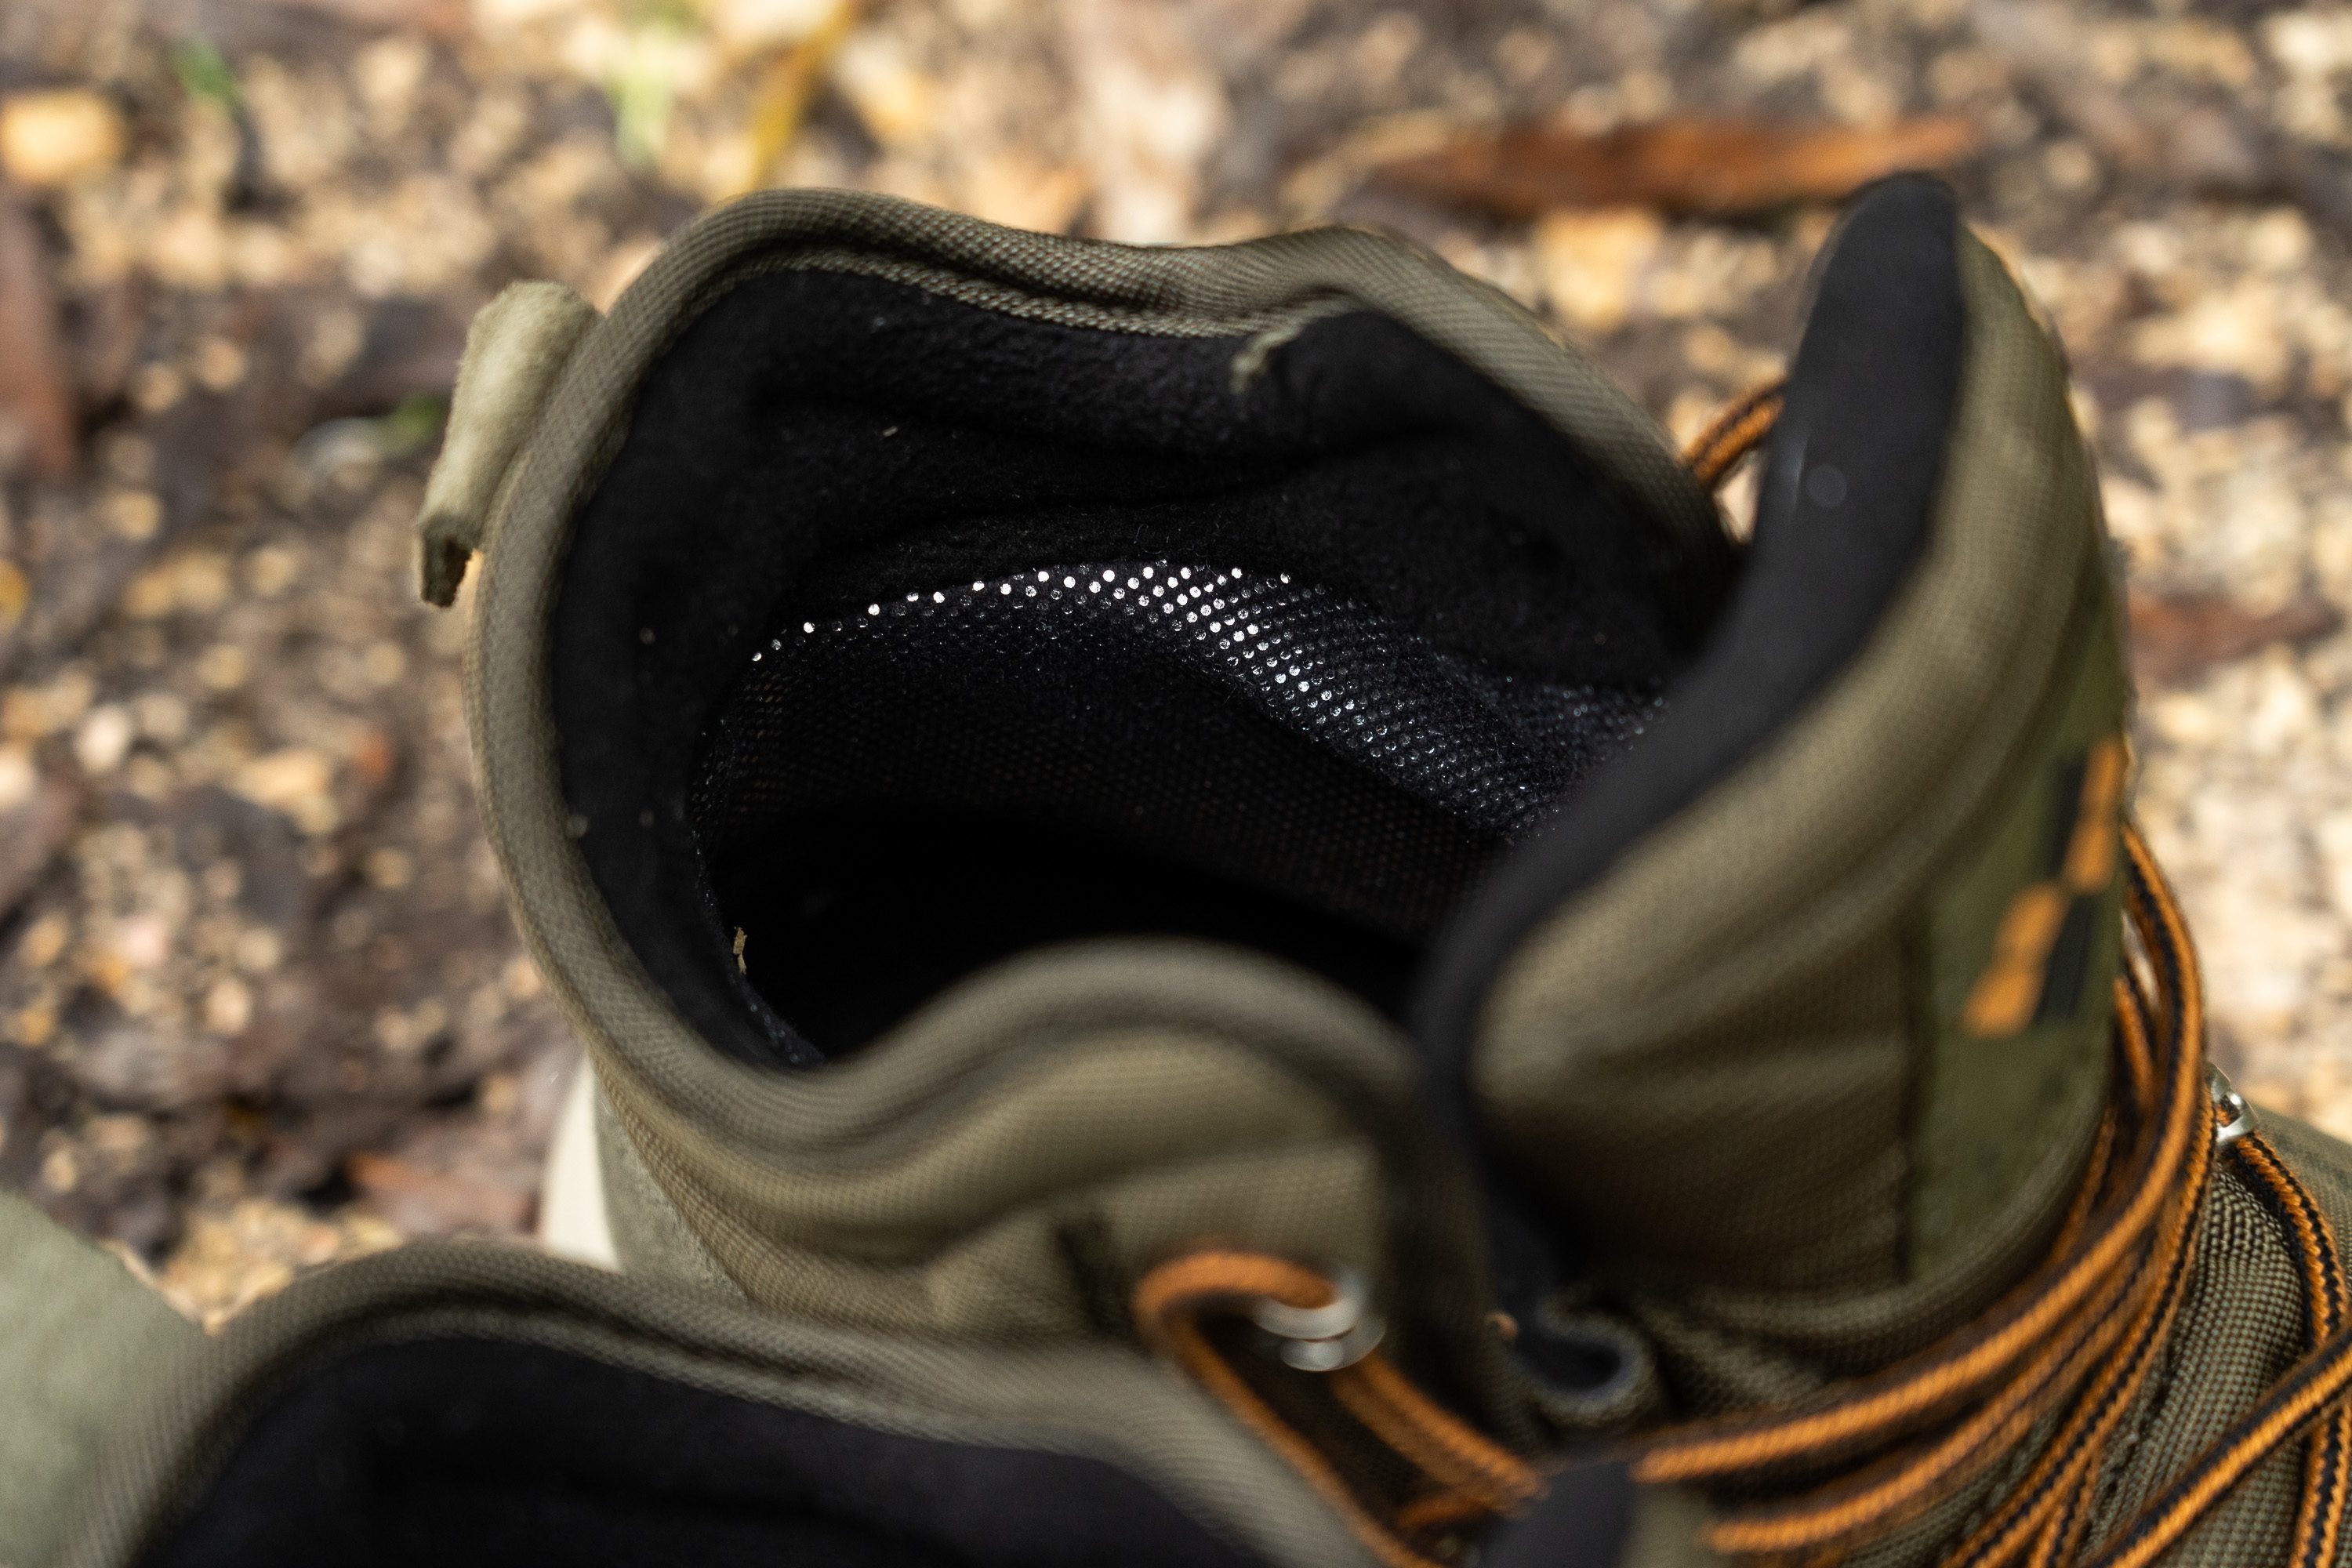 talon-collar-closeup-hiking-boots.jpg